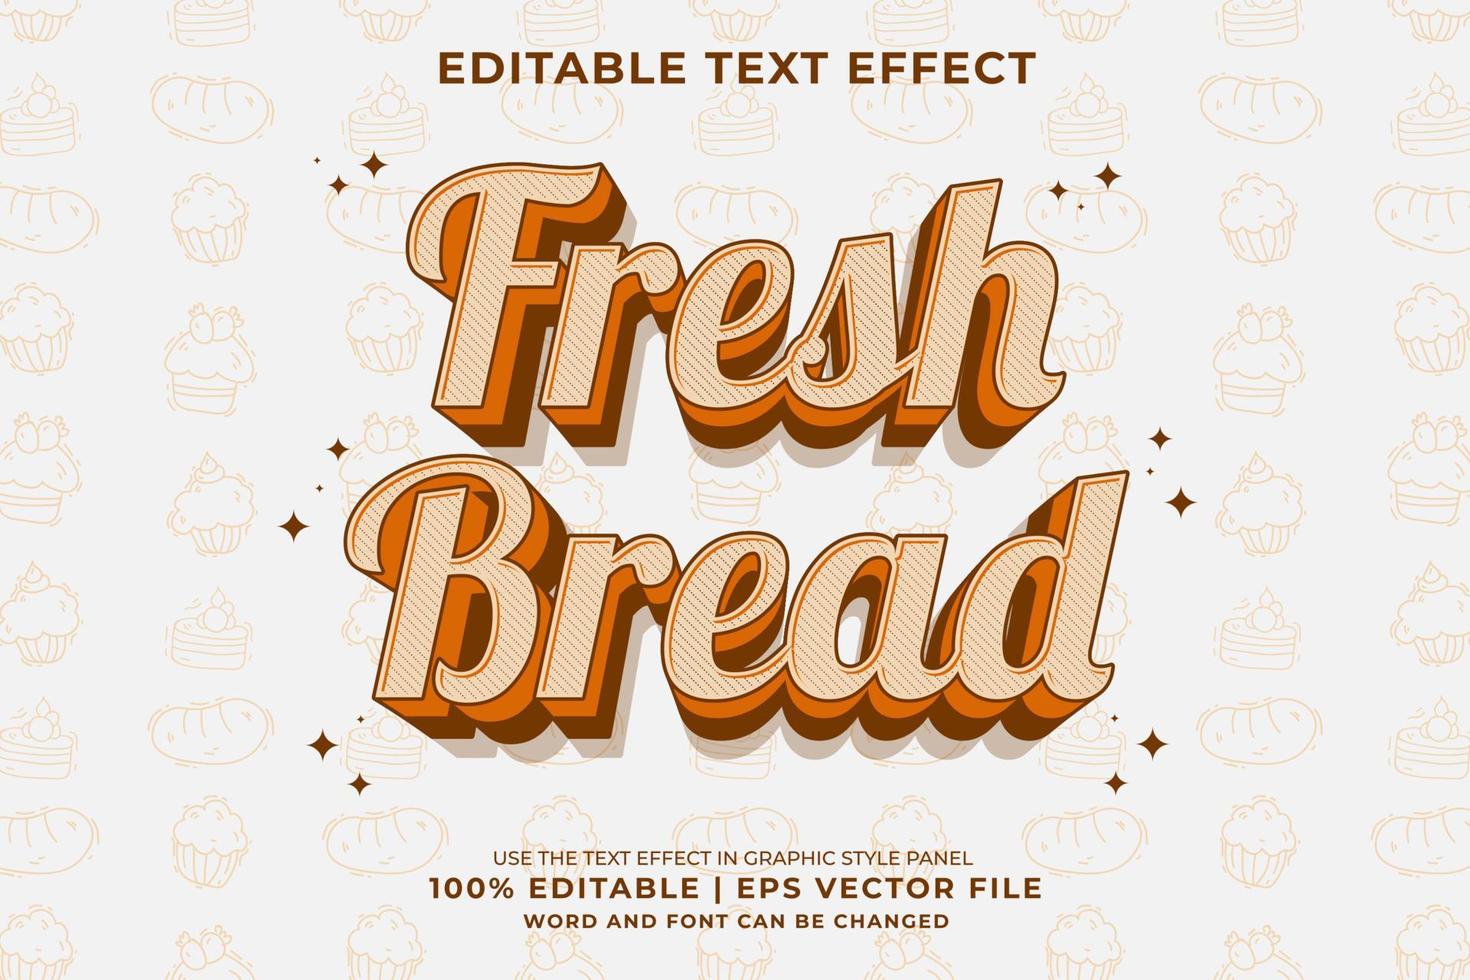 efecto de texto editable - vector premium de estilo de plantilla de dibujos animados tradicional 3d de pan fresco